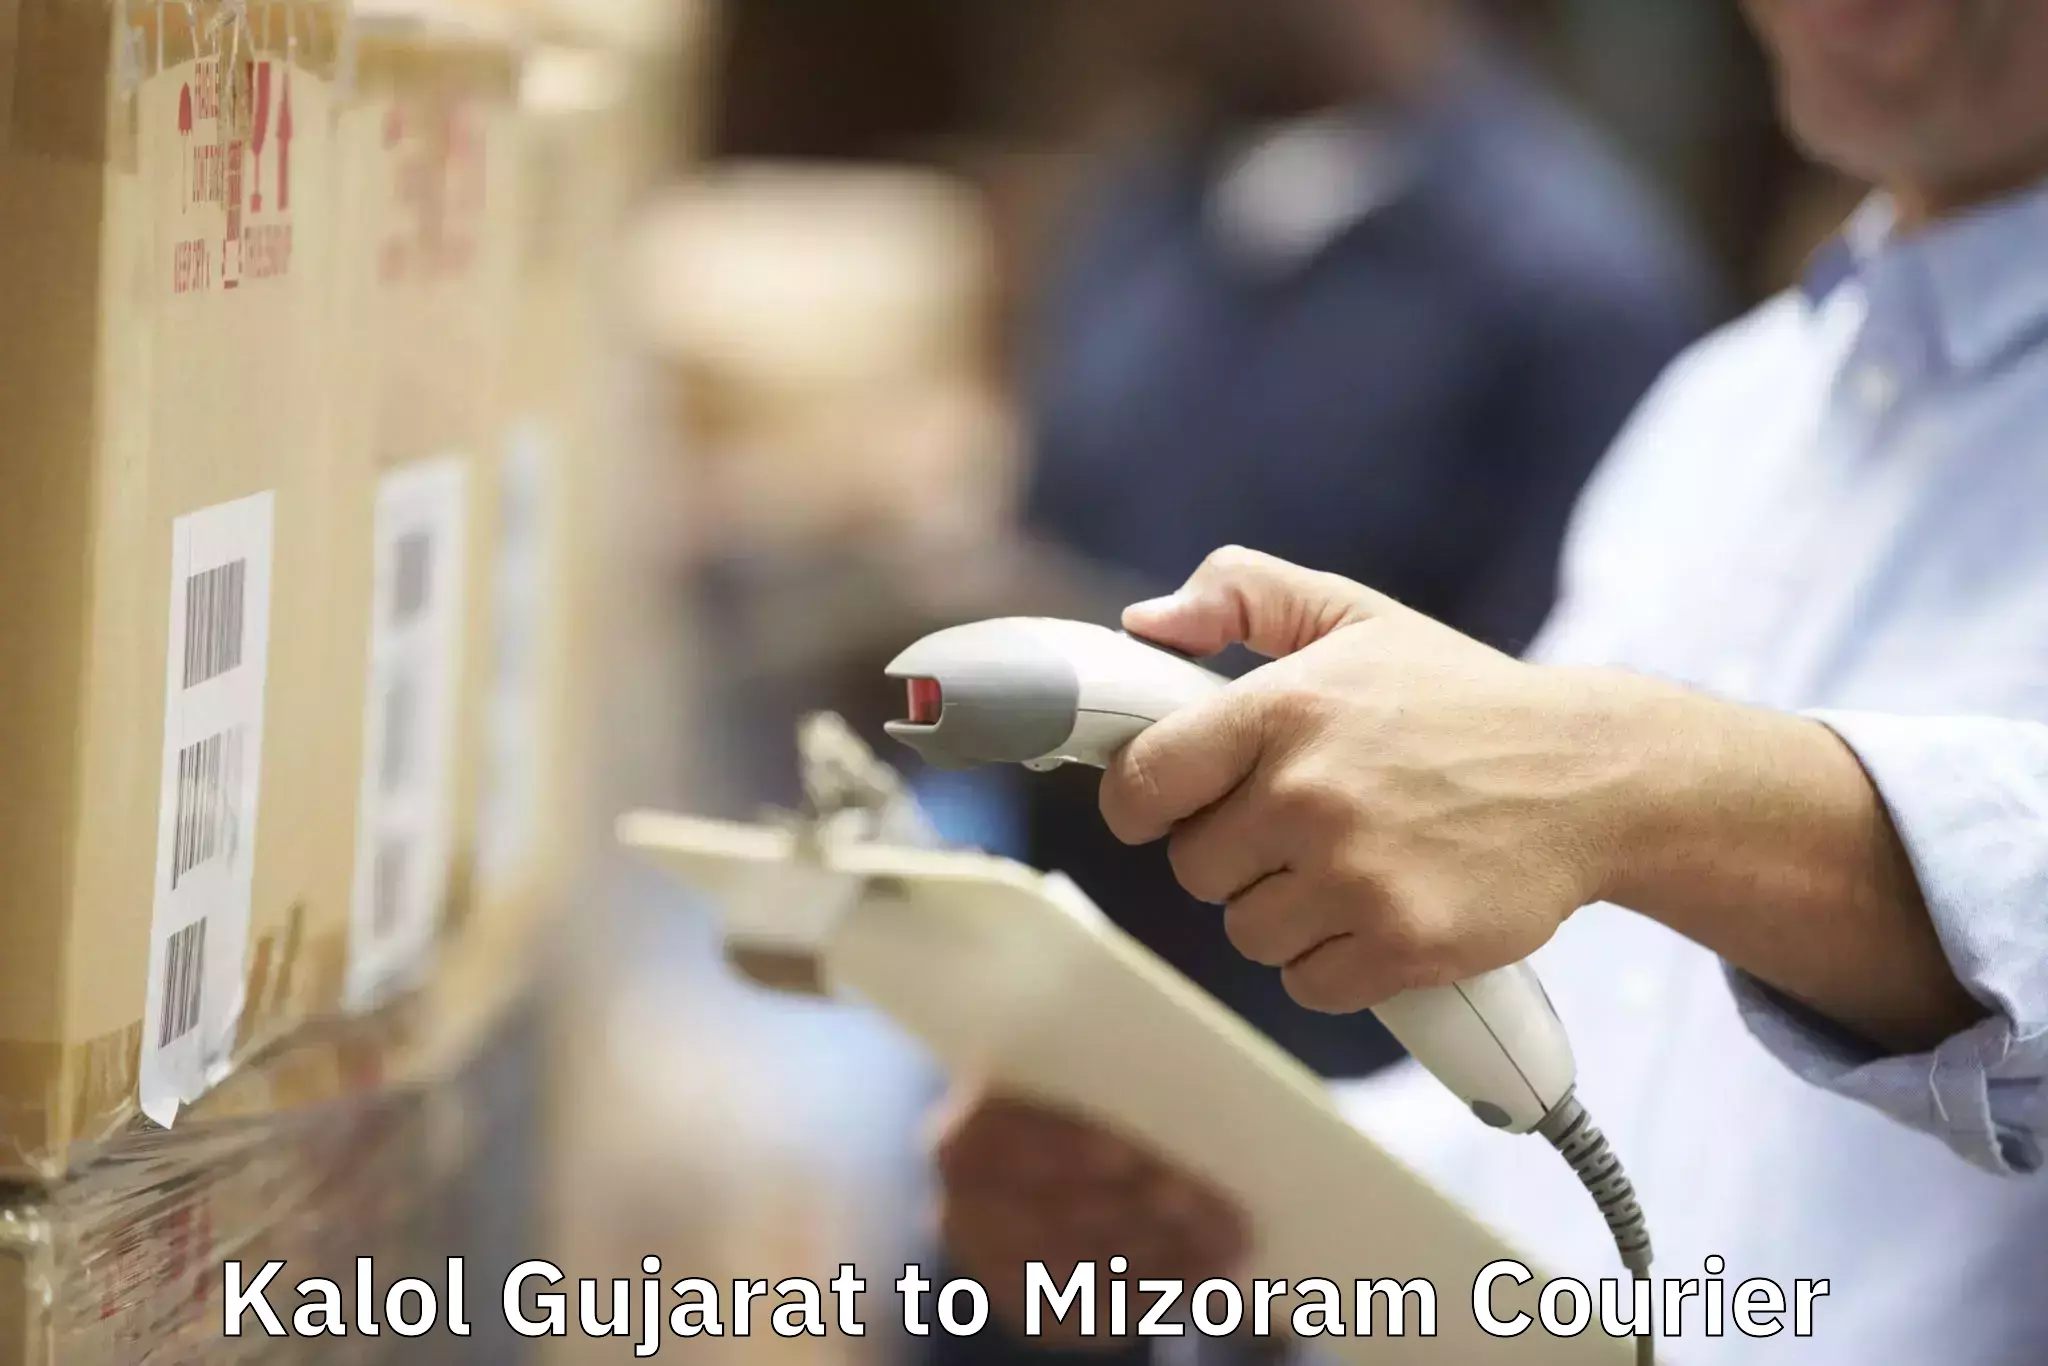 Furniture moving and handling Kalol Gujarat to Kolasib